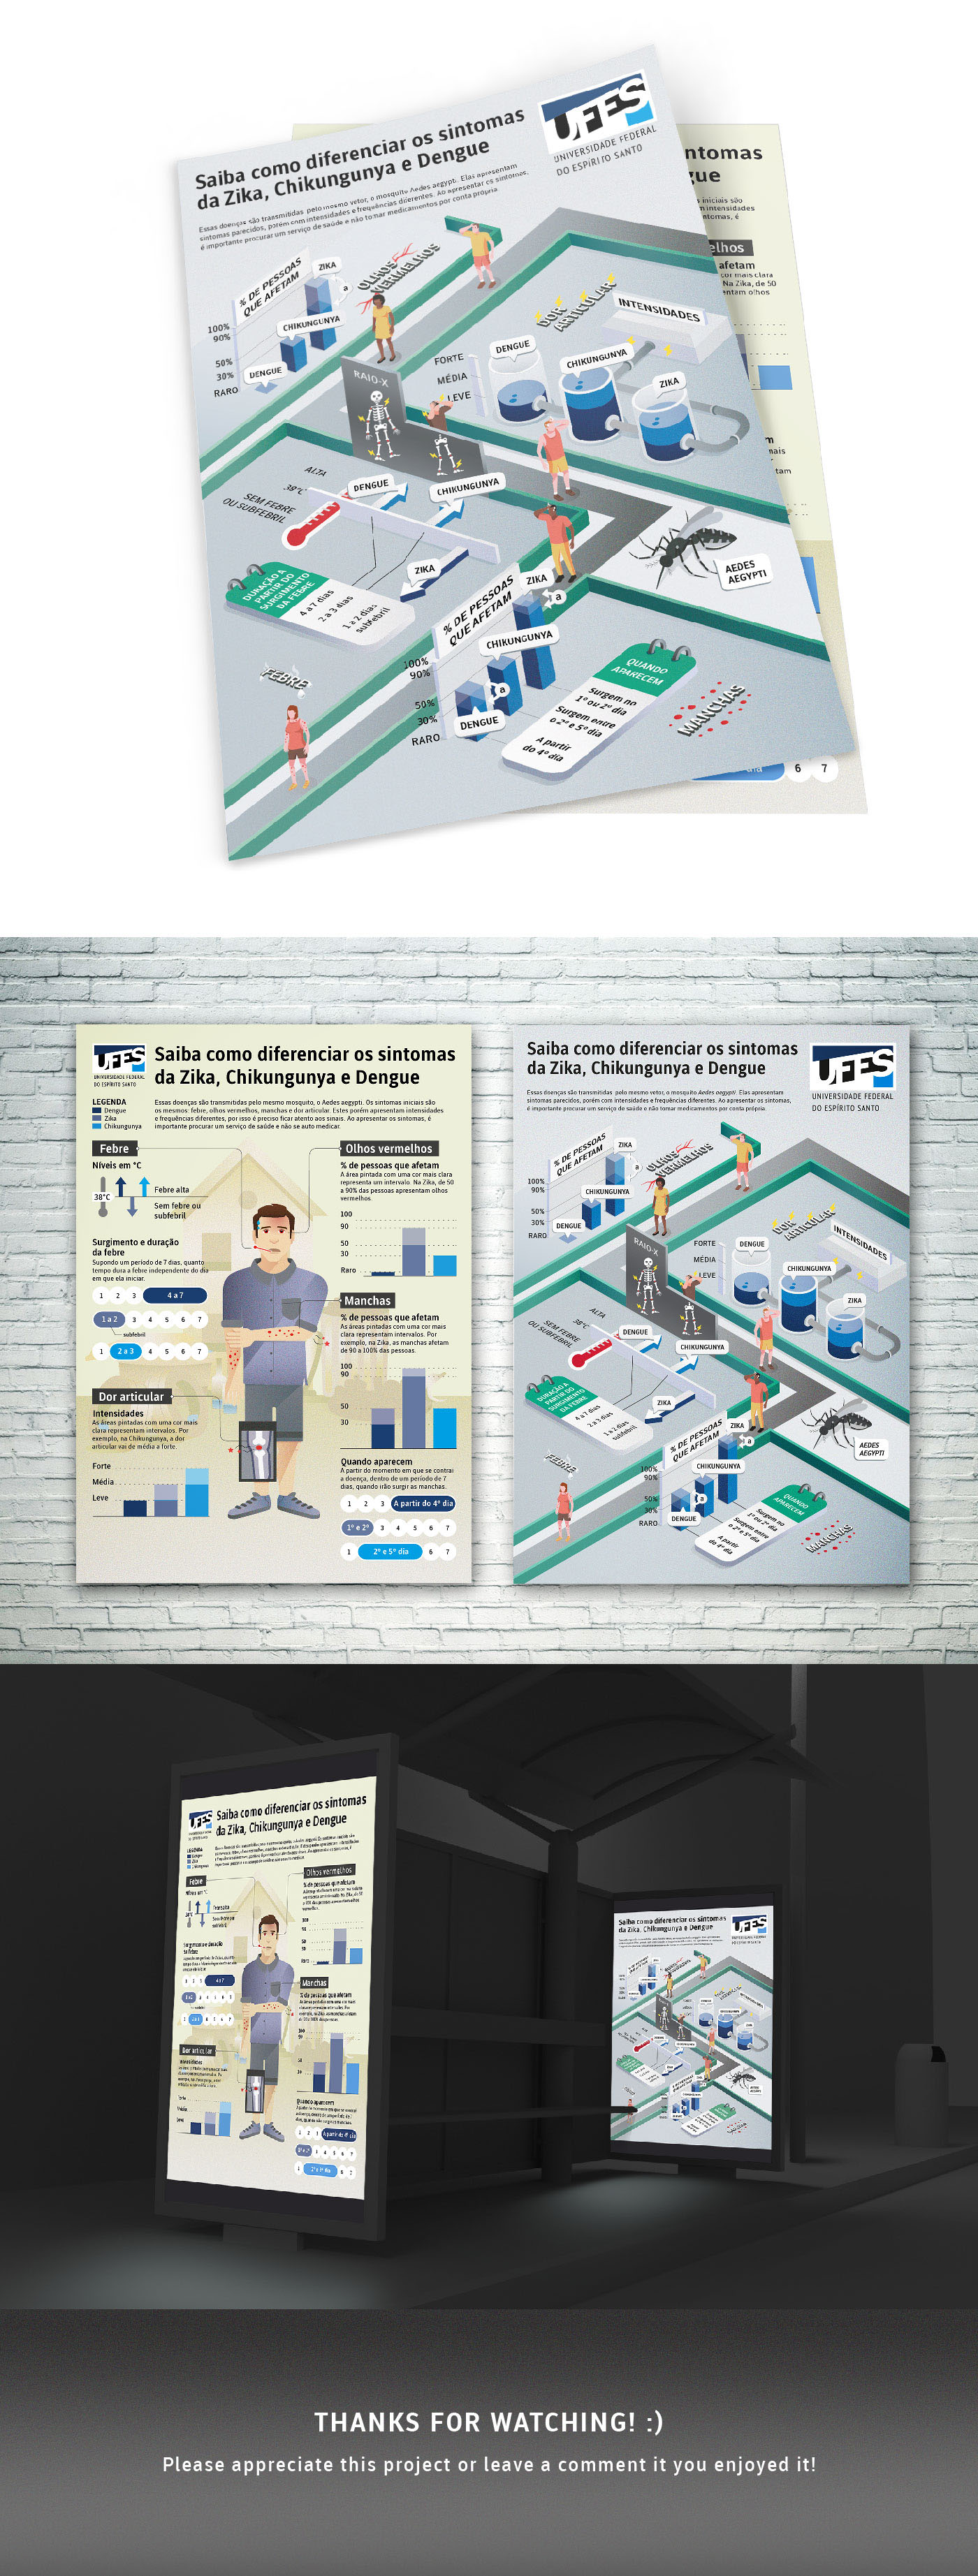 infografia design de informação infodesign saude publica design gráfico Ilustração information design infographics